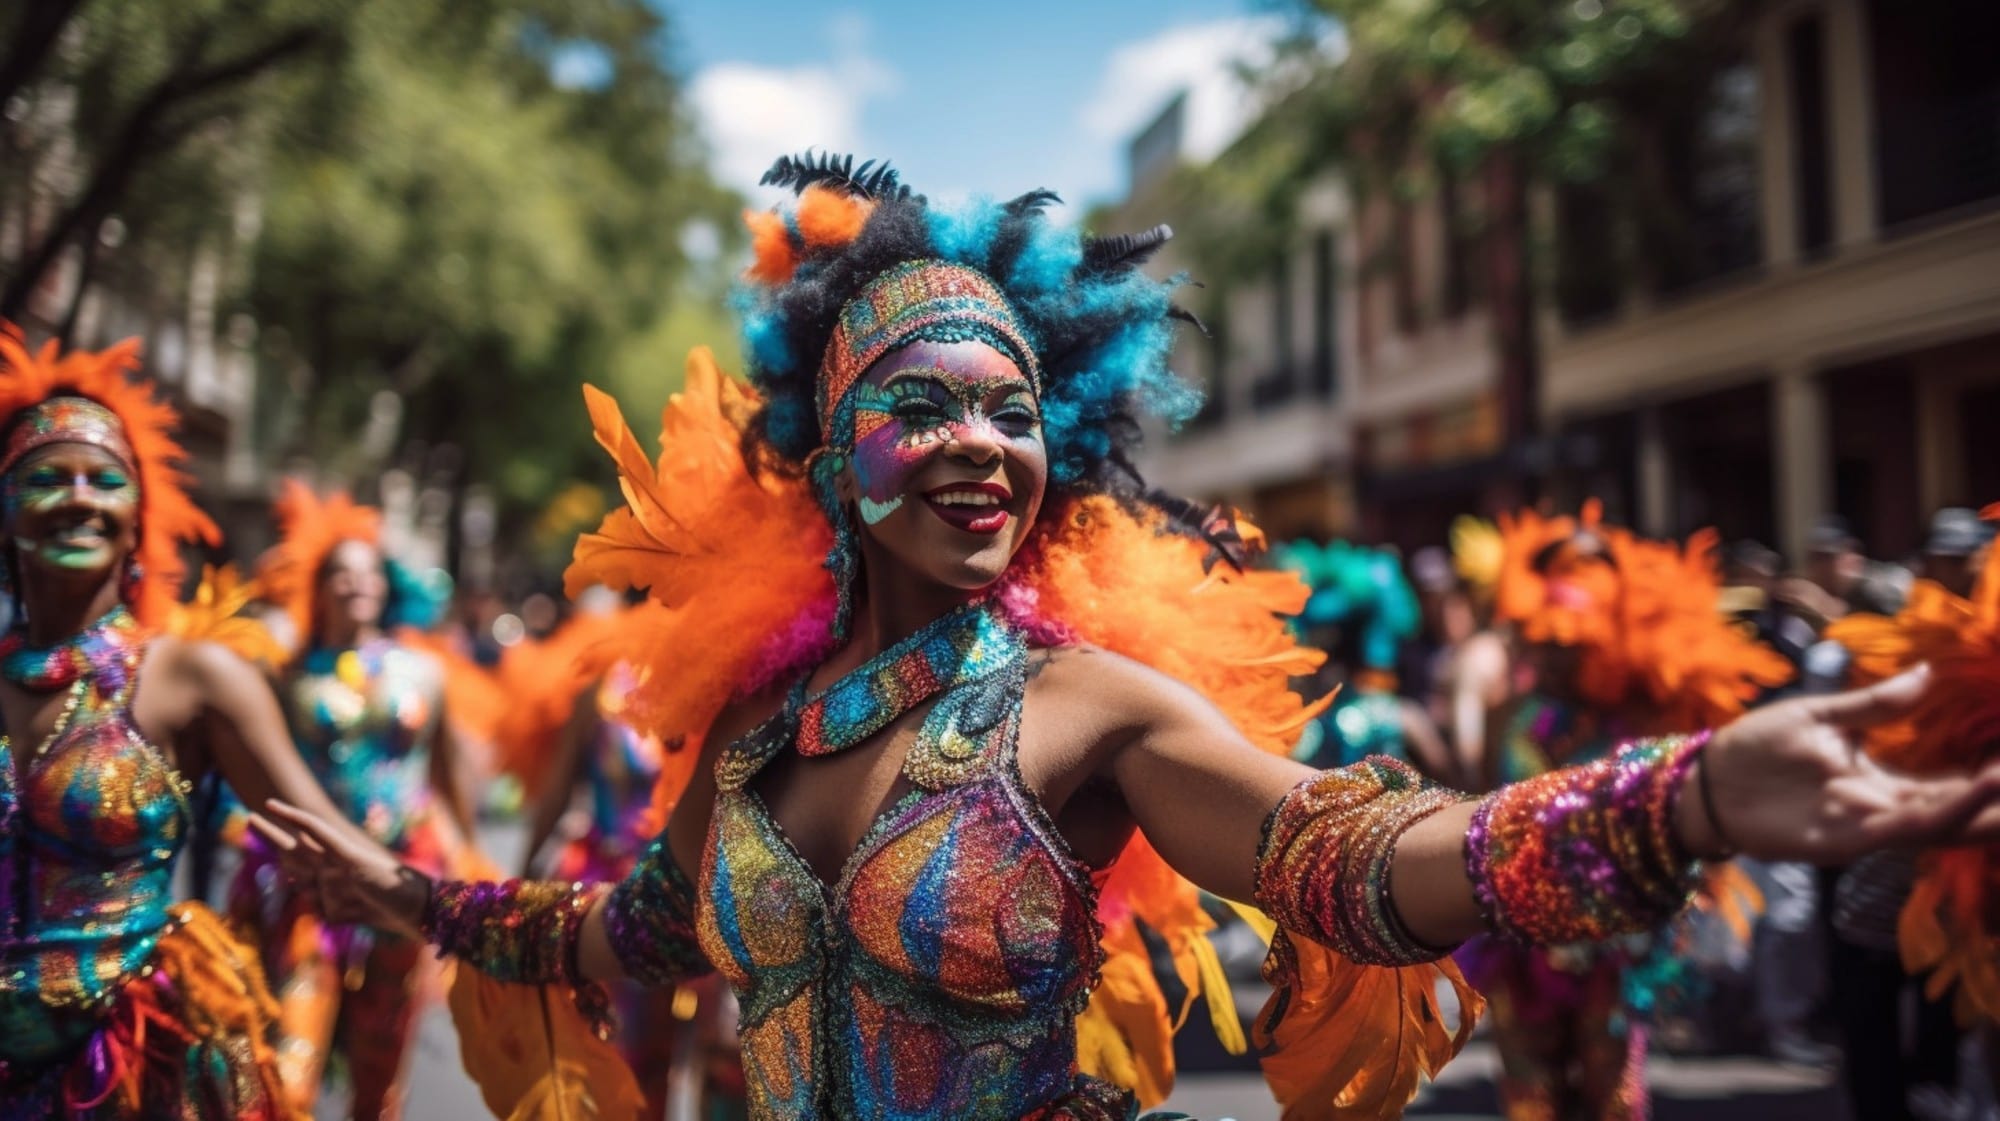 Le défilé coloré du carnaval de Rio